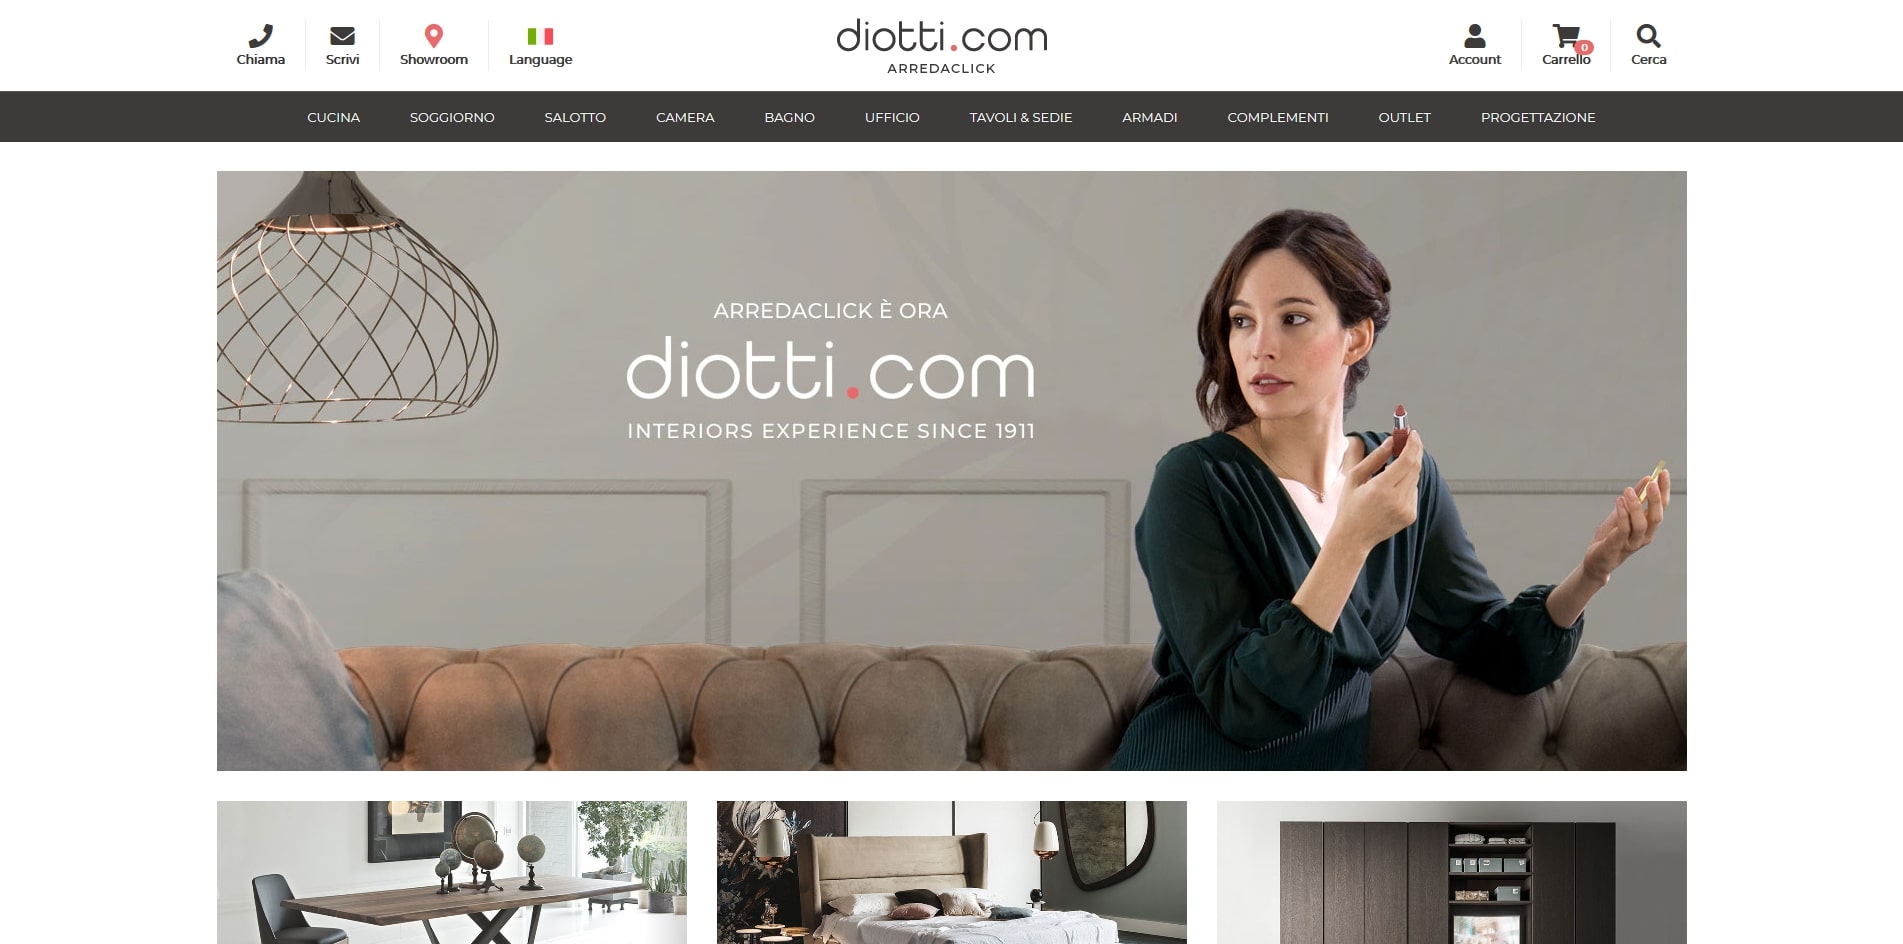 diotti.com arredamenti personalizzati e su misura